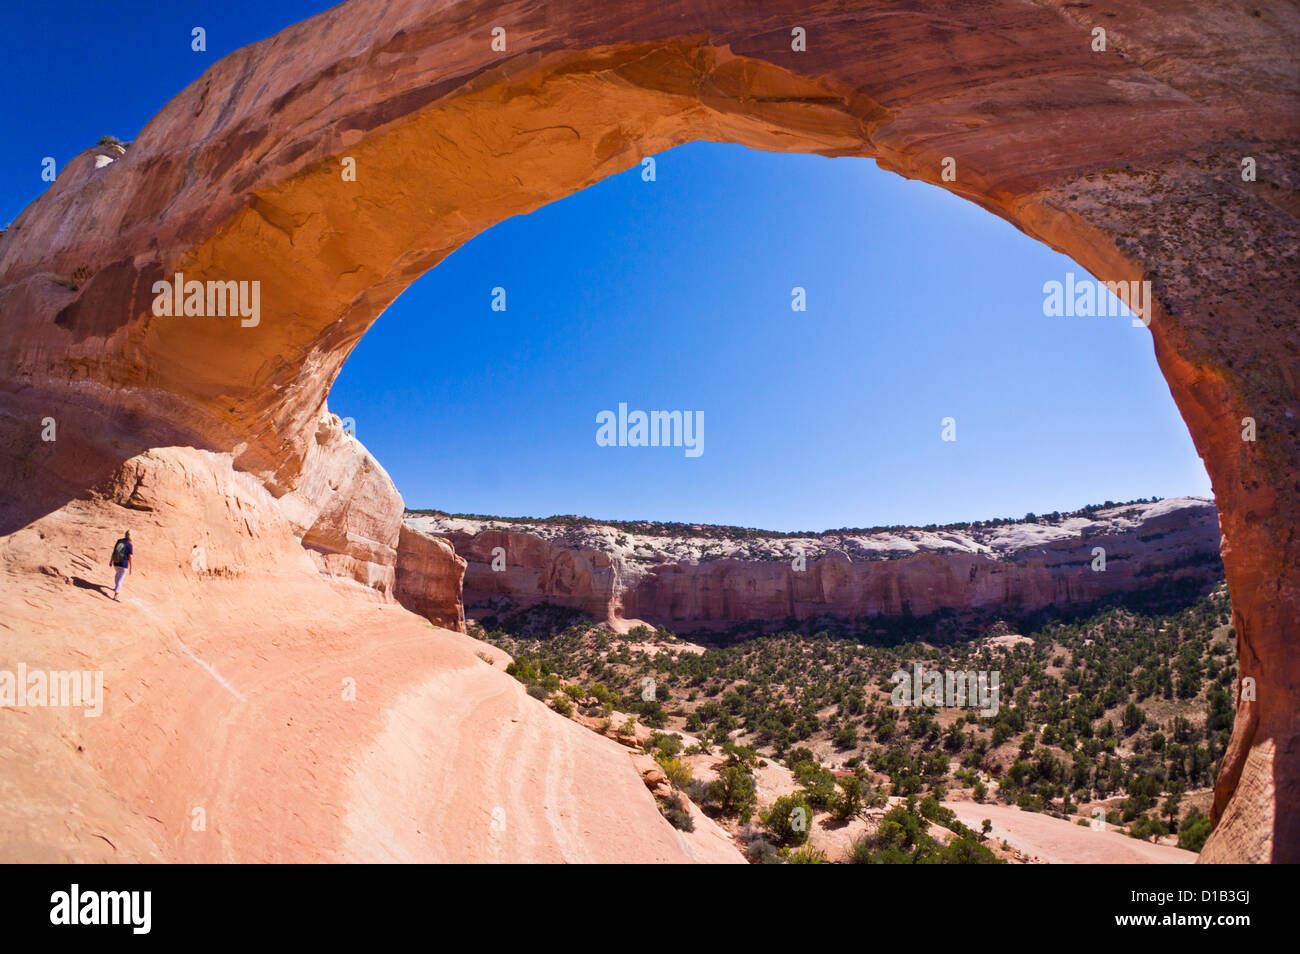 Einsame Touristen Wanderer am Wilson Arch, in der Nähe von Moab, Utah, USA Vereinigte Staaten von Amerika, Nordamerika Stockfoto